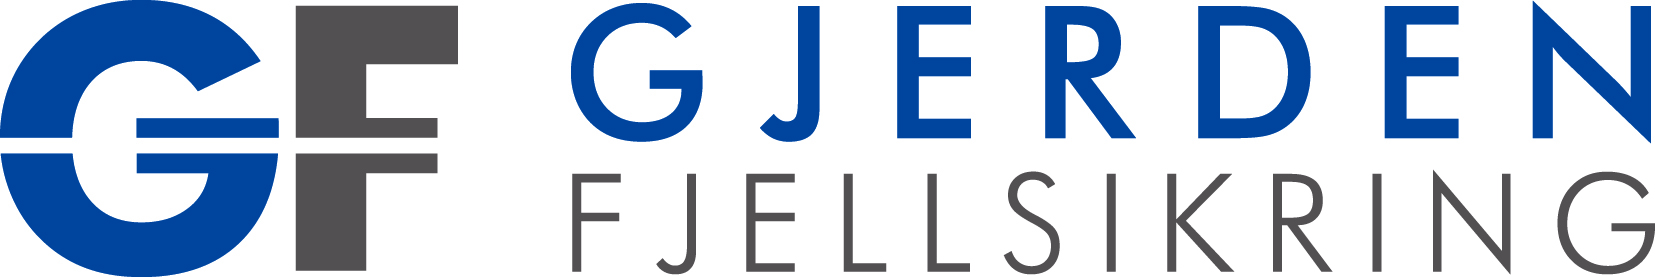 Gjerden Fjellsikring AS Logo